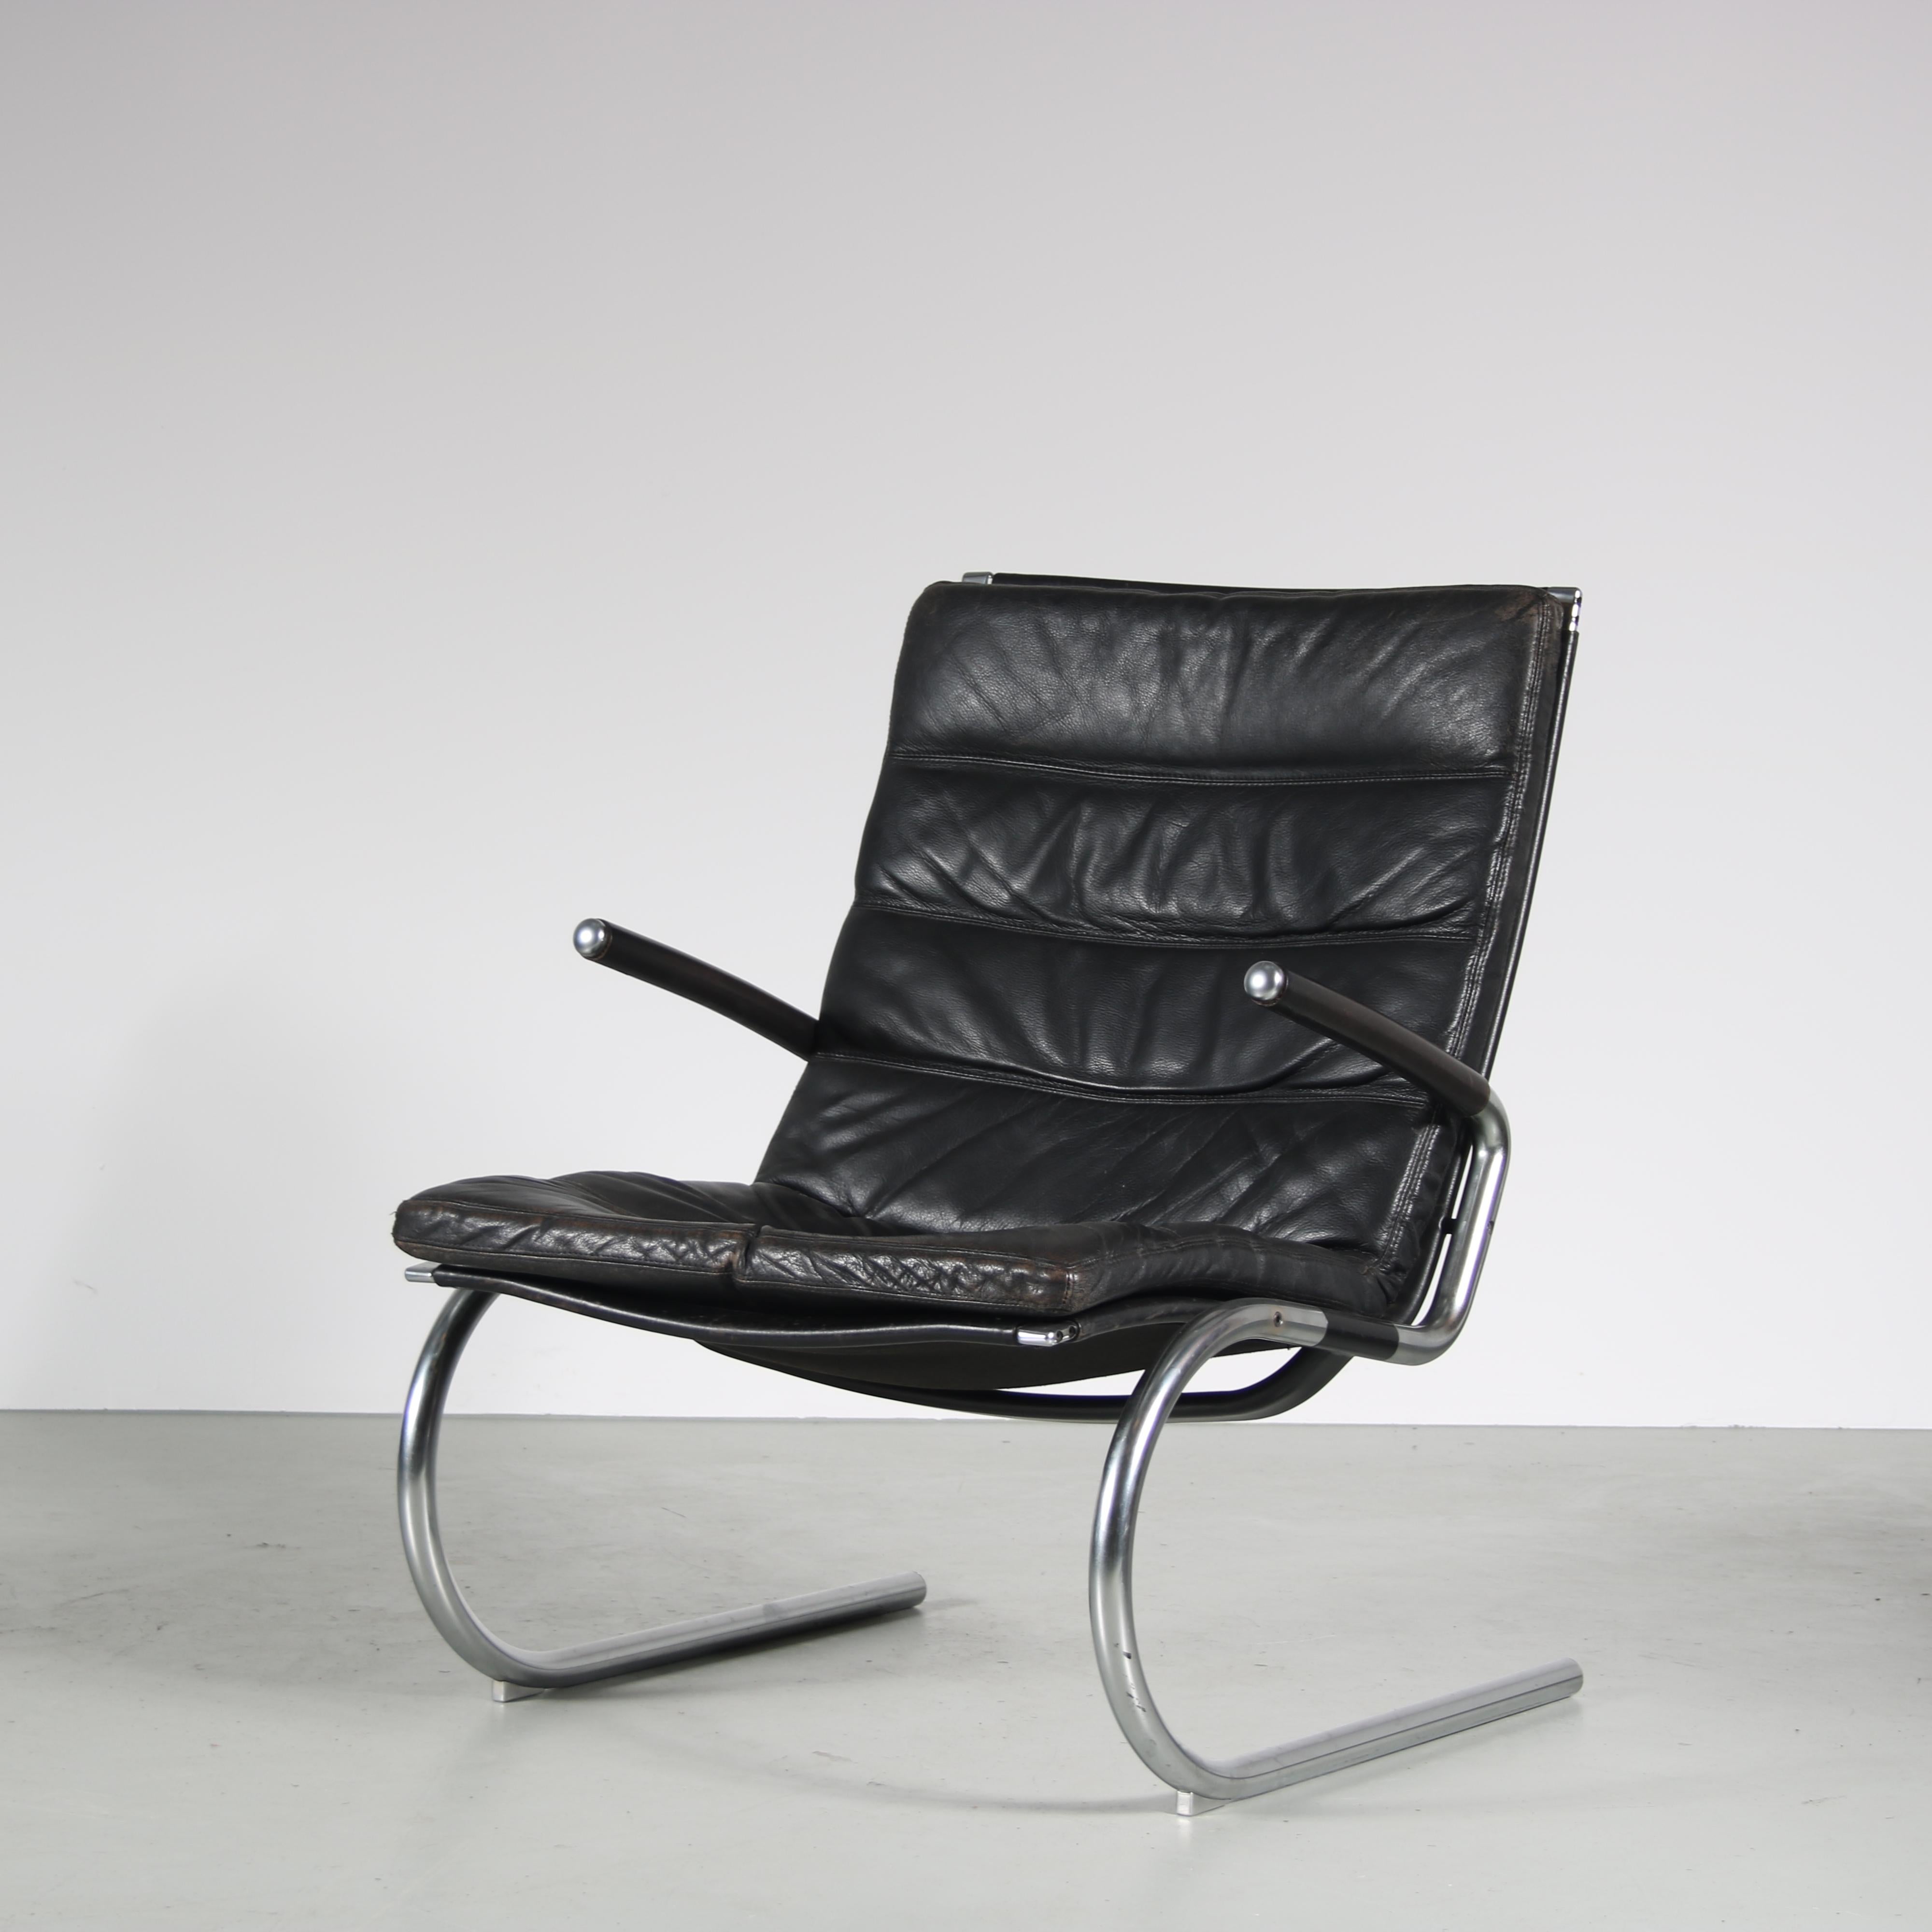 Ein schöner Loungesessel, entworfen von Jorgen Kastholm, hergestellt in Dänemark um 1960.

Dieses elegante Möbelstück hat ein verchromtes Metallrohrgestell mit ledergepolstertem Sitz, Rücken und Armlehnen. Die Kombination der Materialien schafft